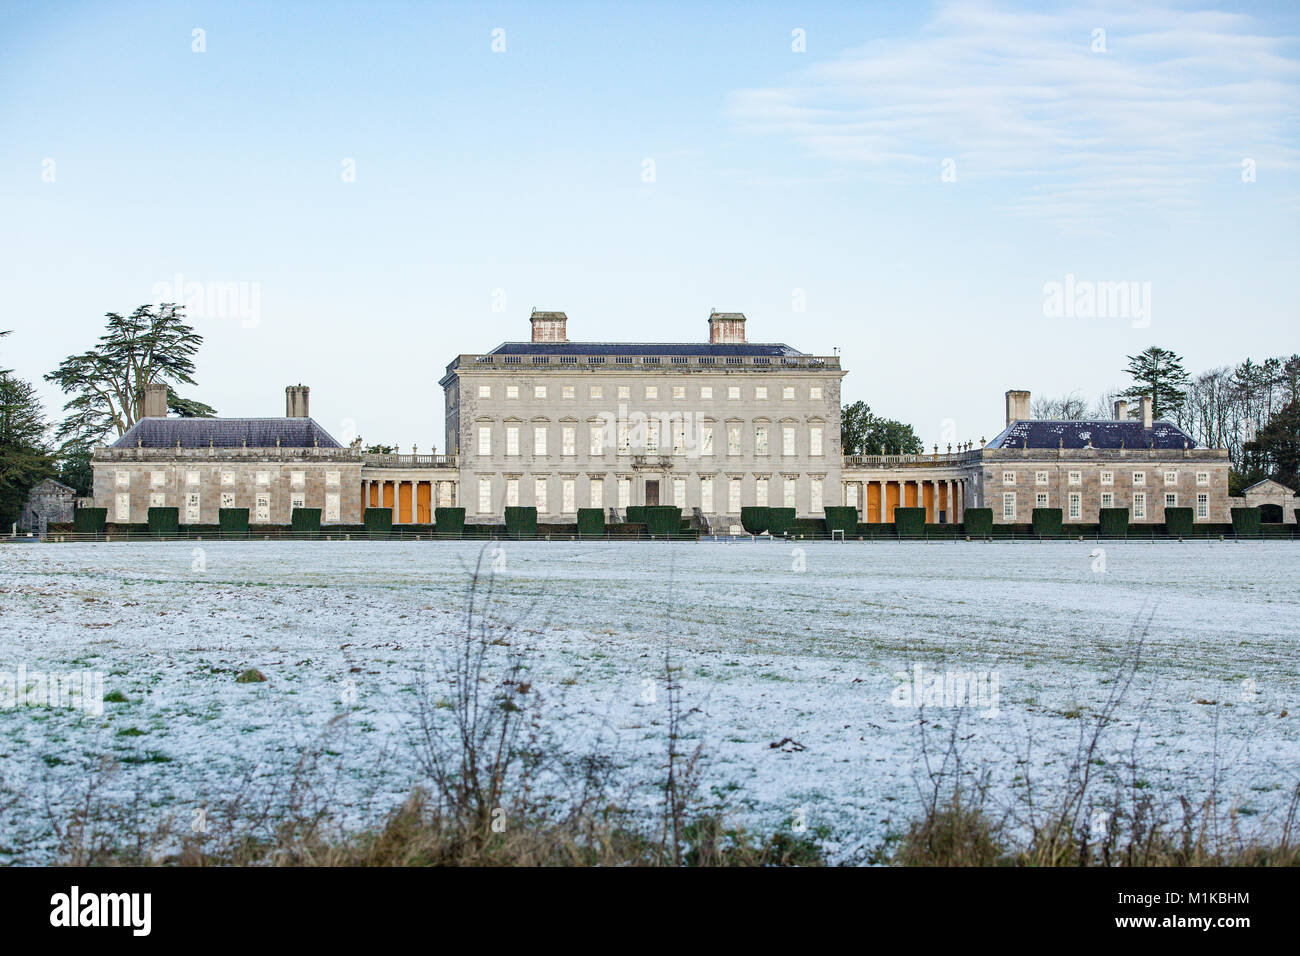 Castletown House et les parcs couverts de neige, par un froid matin de janvier. Ciel clair. Celbridge, comté de Kildare, Irlande Banque D'Images